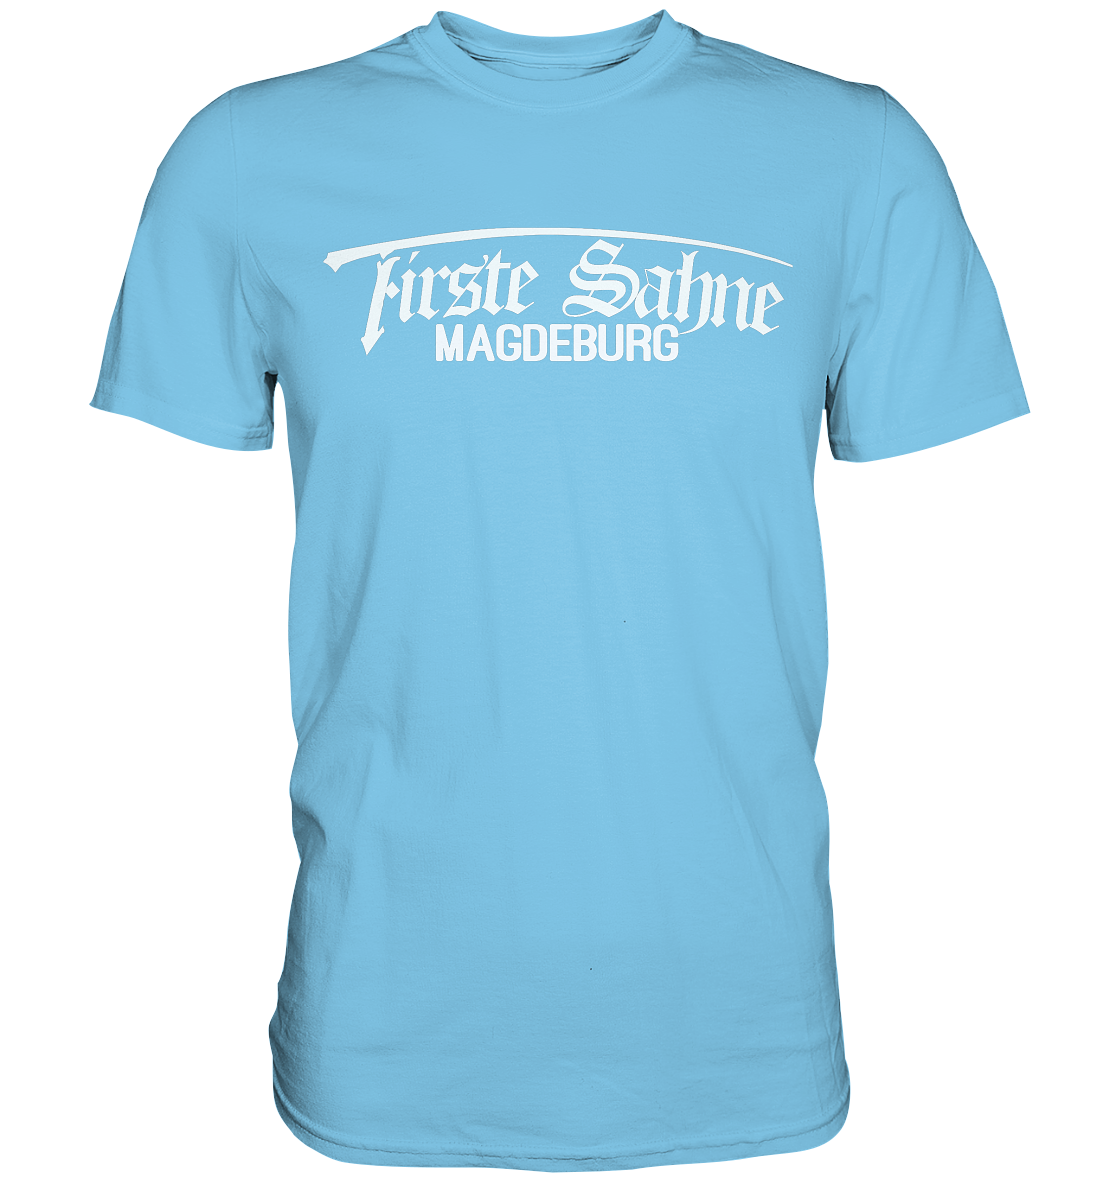 Firste Sahne 2 - Premium Shirt